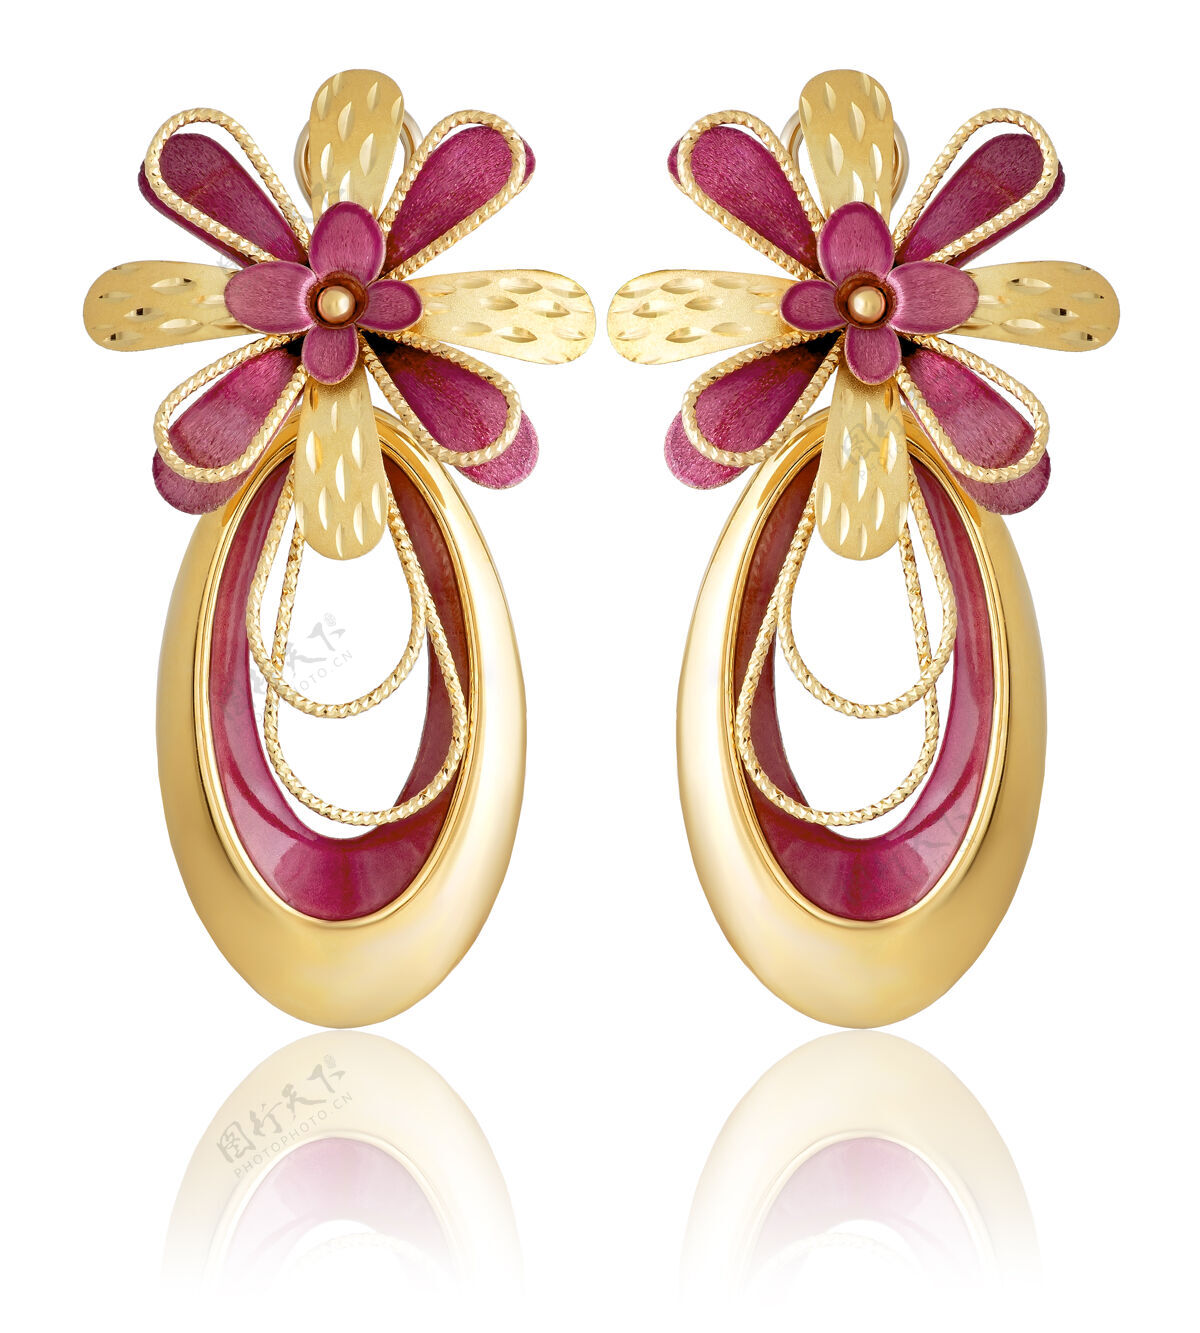 金属时尚的金色耳环与珐琅在白色的背景与反映形状珍贵明亮